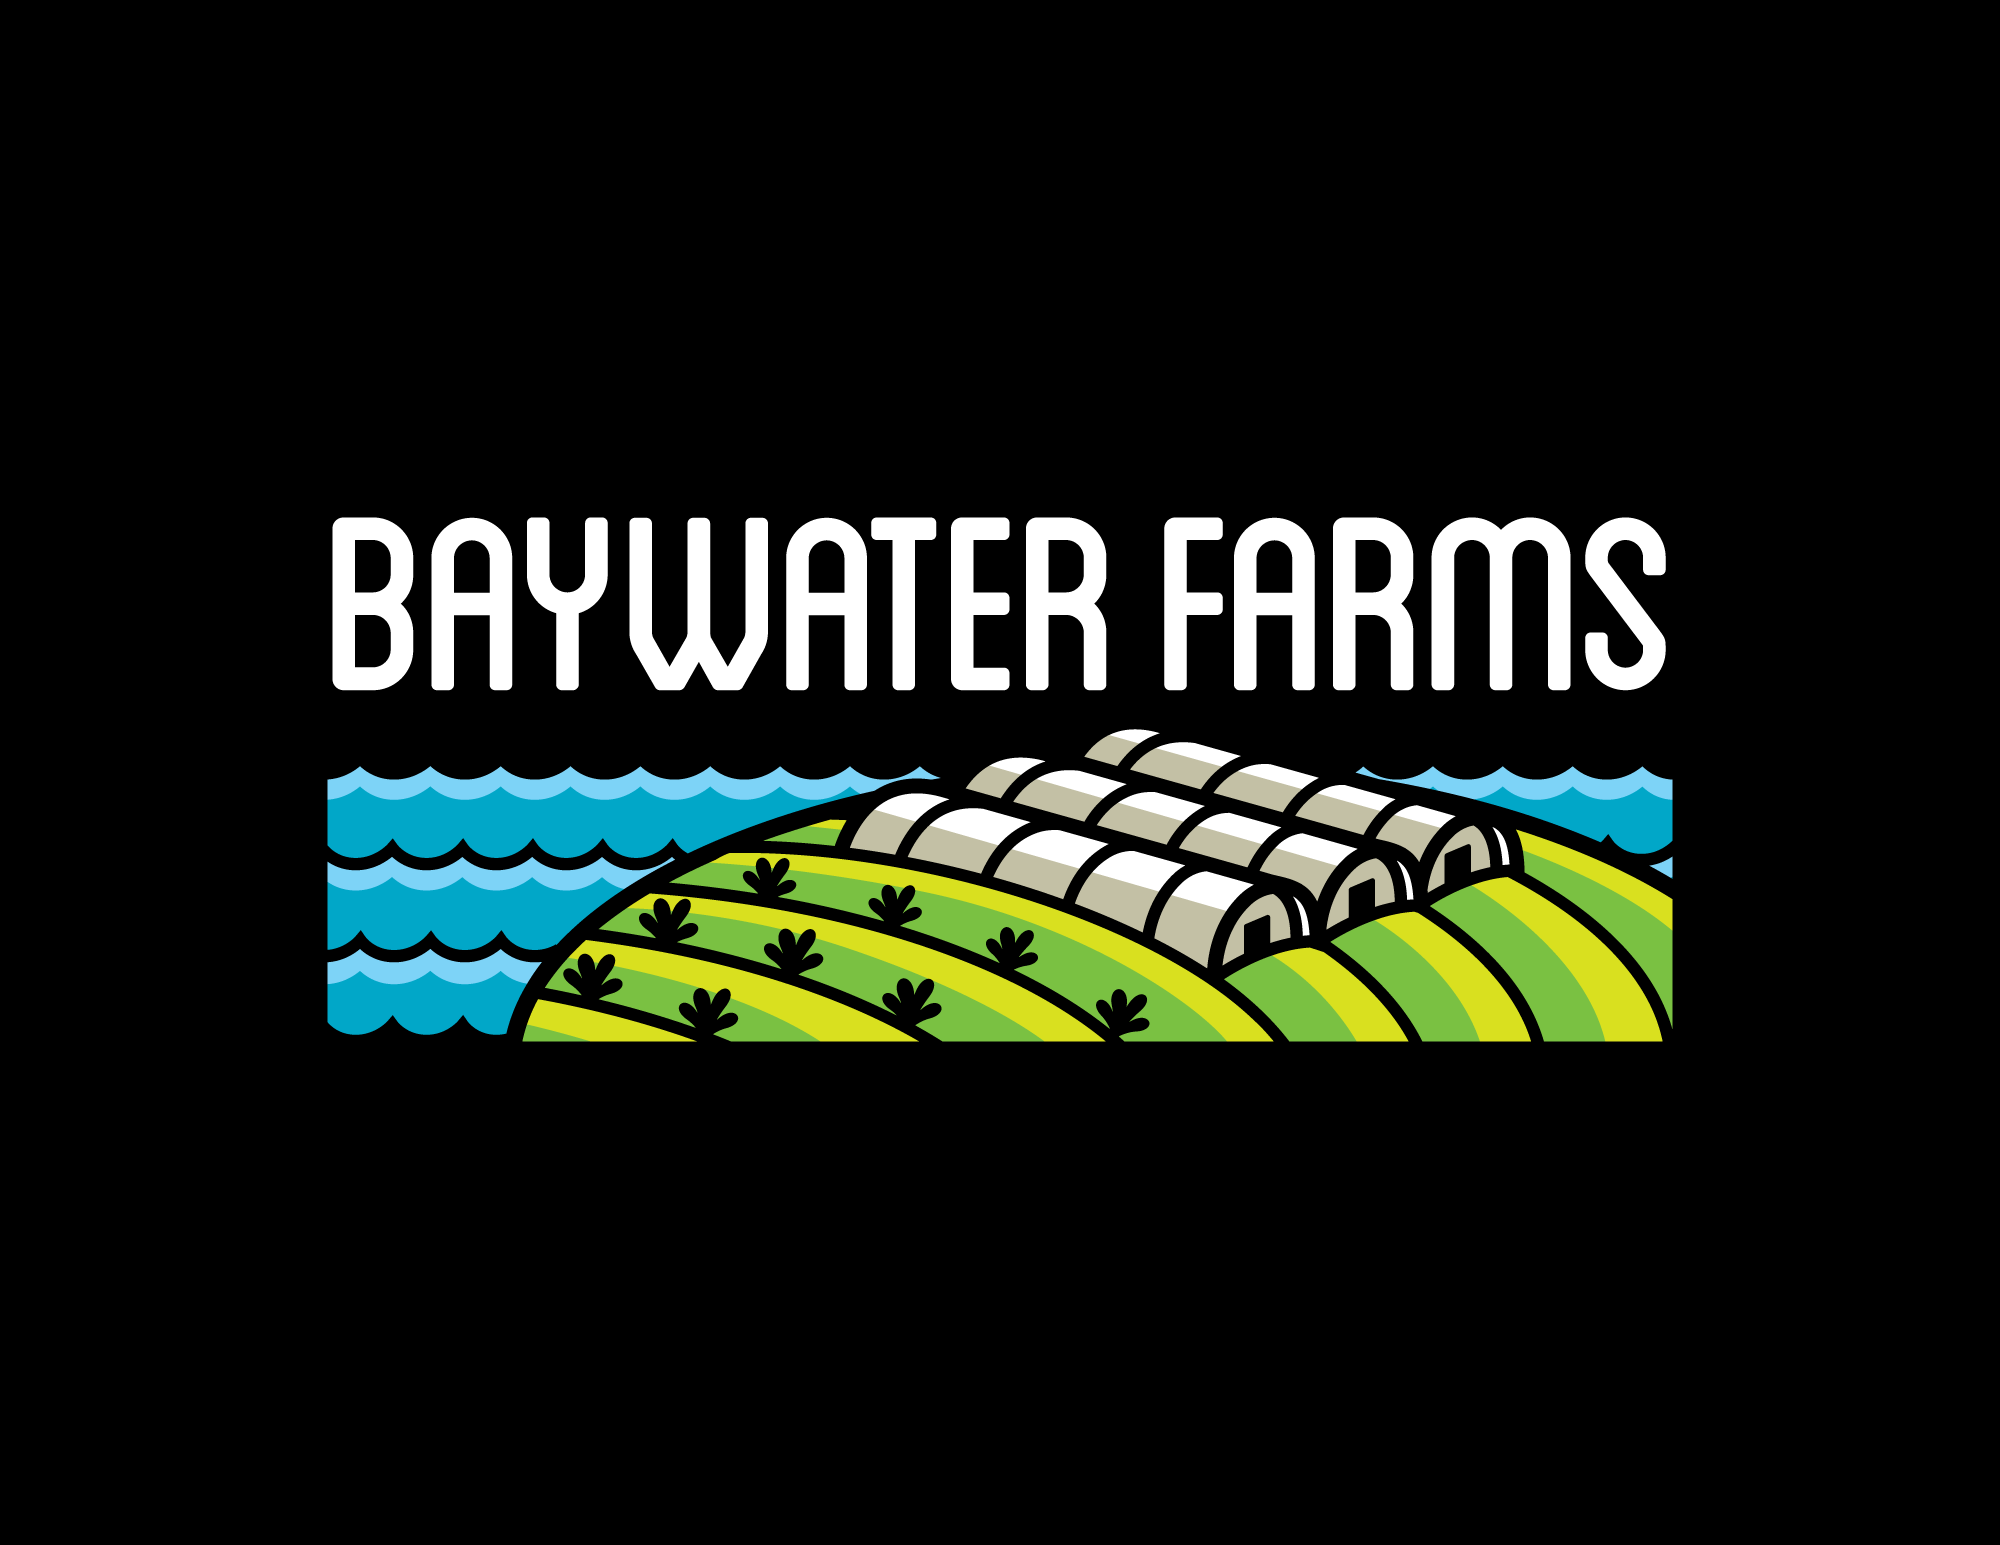 BaywaterFarms_Logo_V1_Color-Rectangle-BlackBKG.png